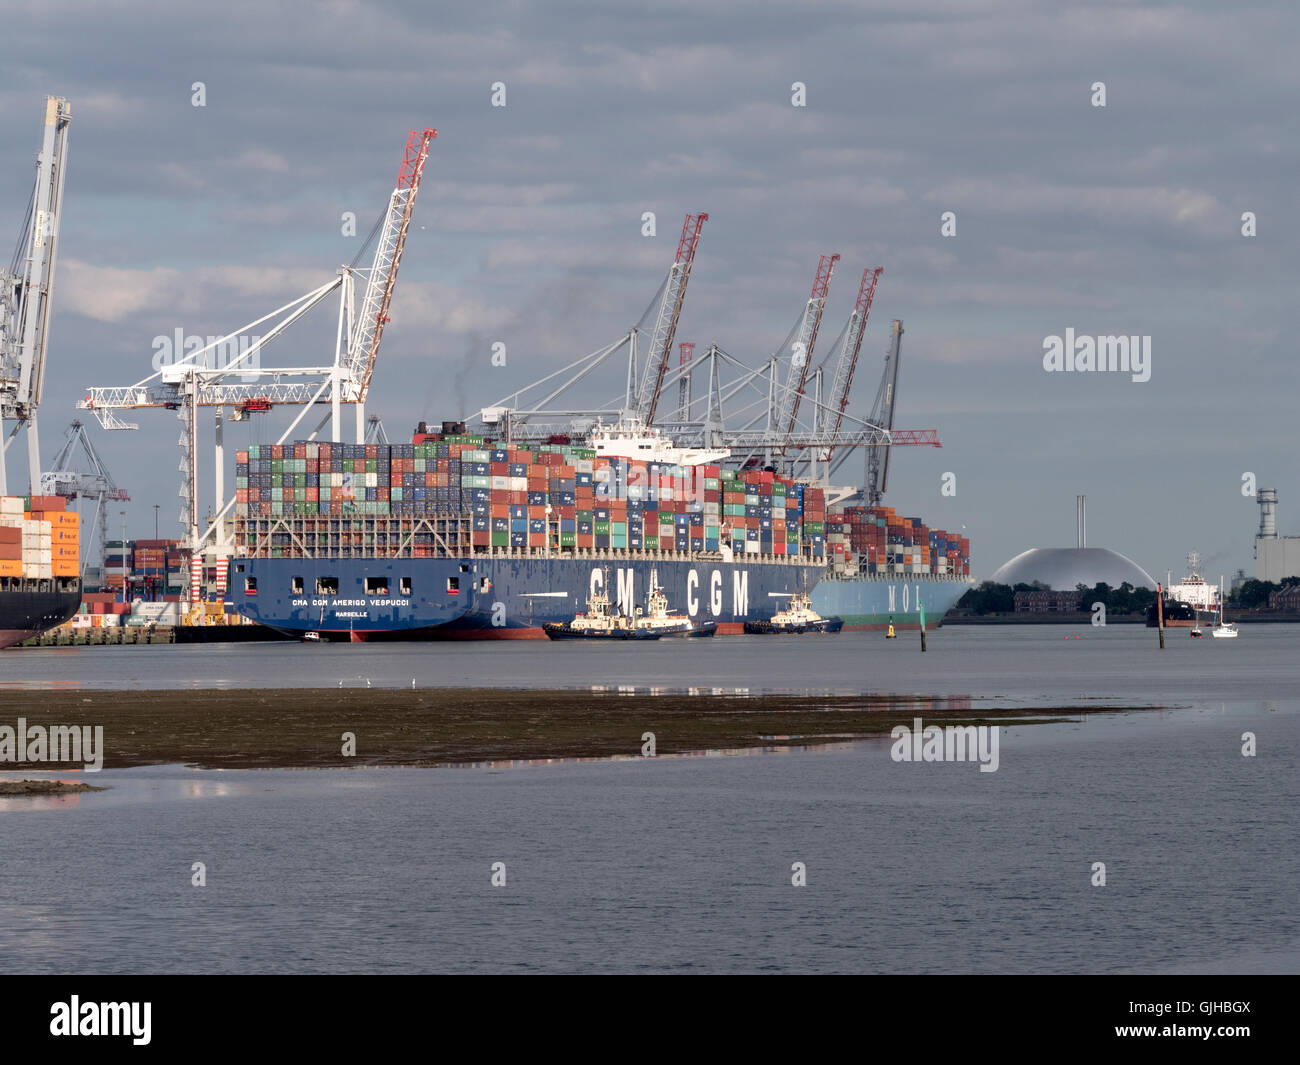 CMA CGM Amerigo Vespucci, porte-conteneurs, accostage à port à conteneurs, les quais de Southampton, Southampton, Hampshire, England, UK. Banque D'Images